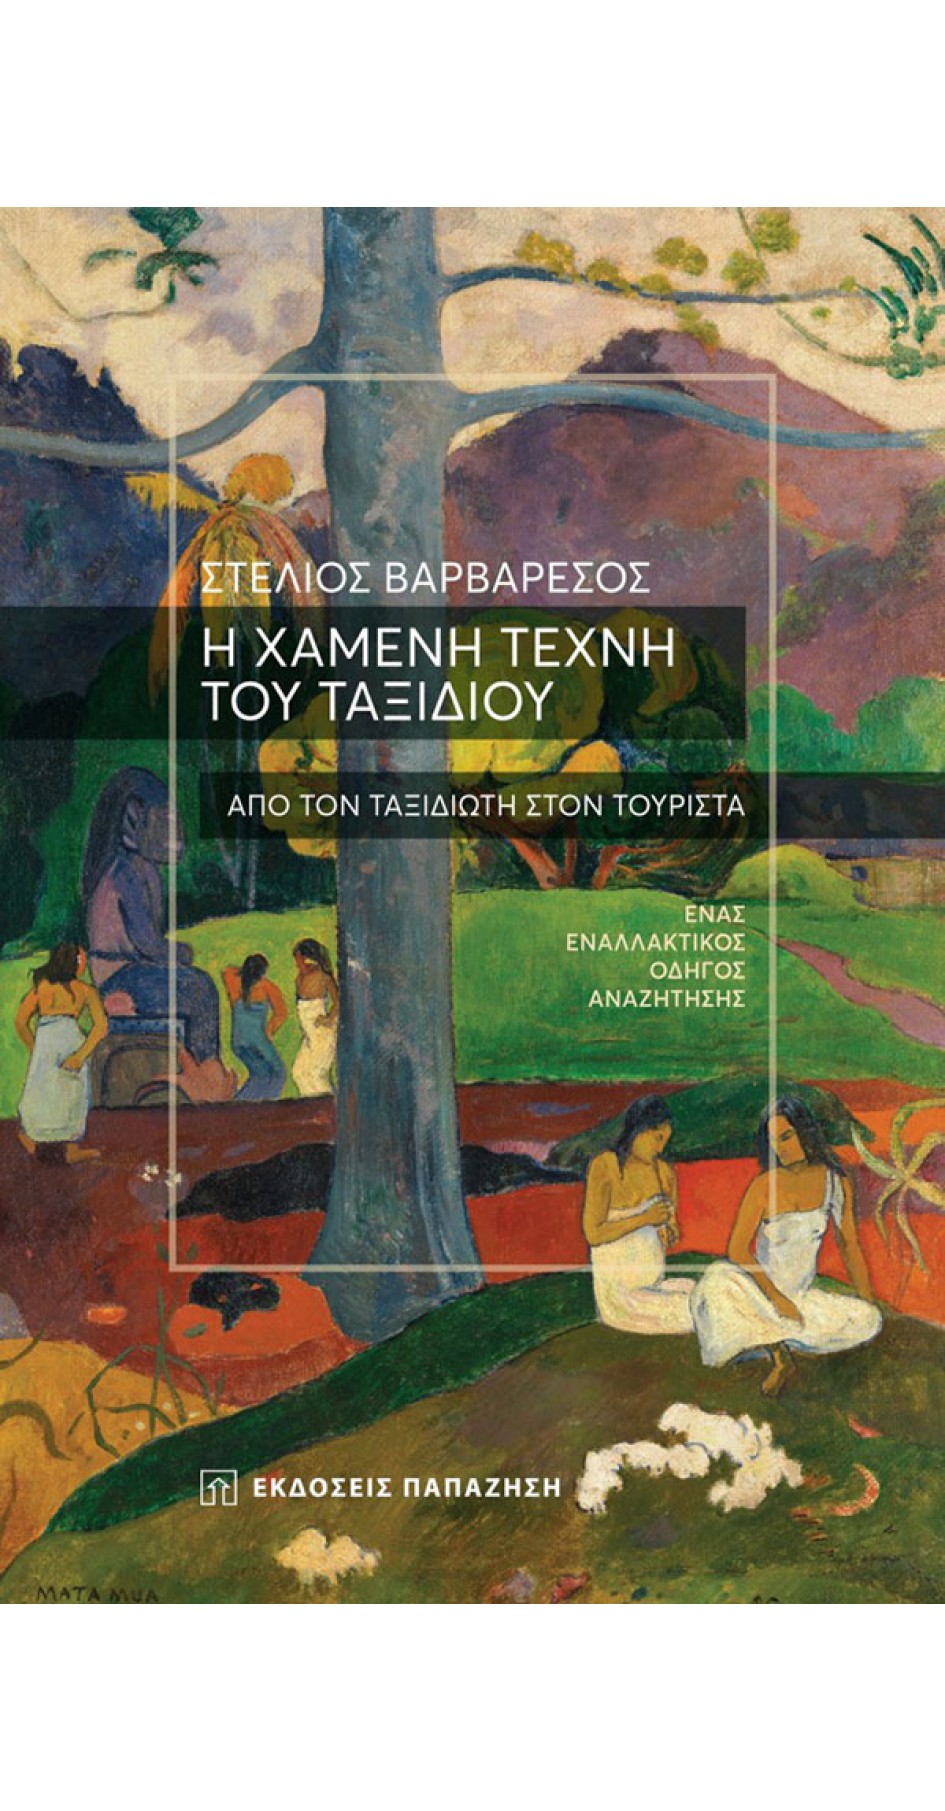 Η χαμένη τέχνη του ταξιδιού (book in Greek)